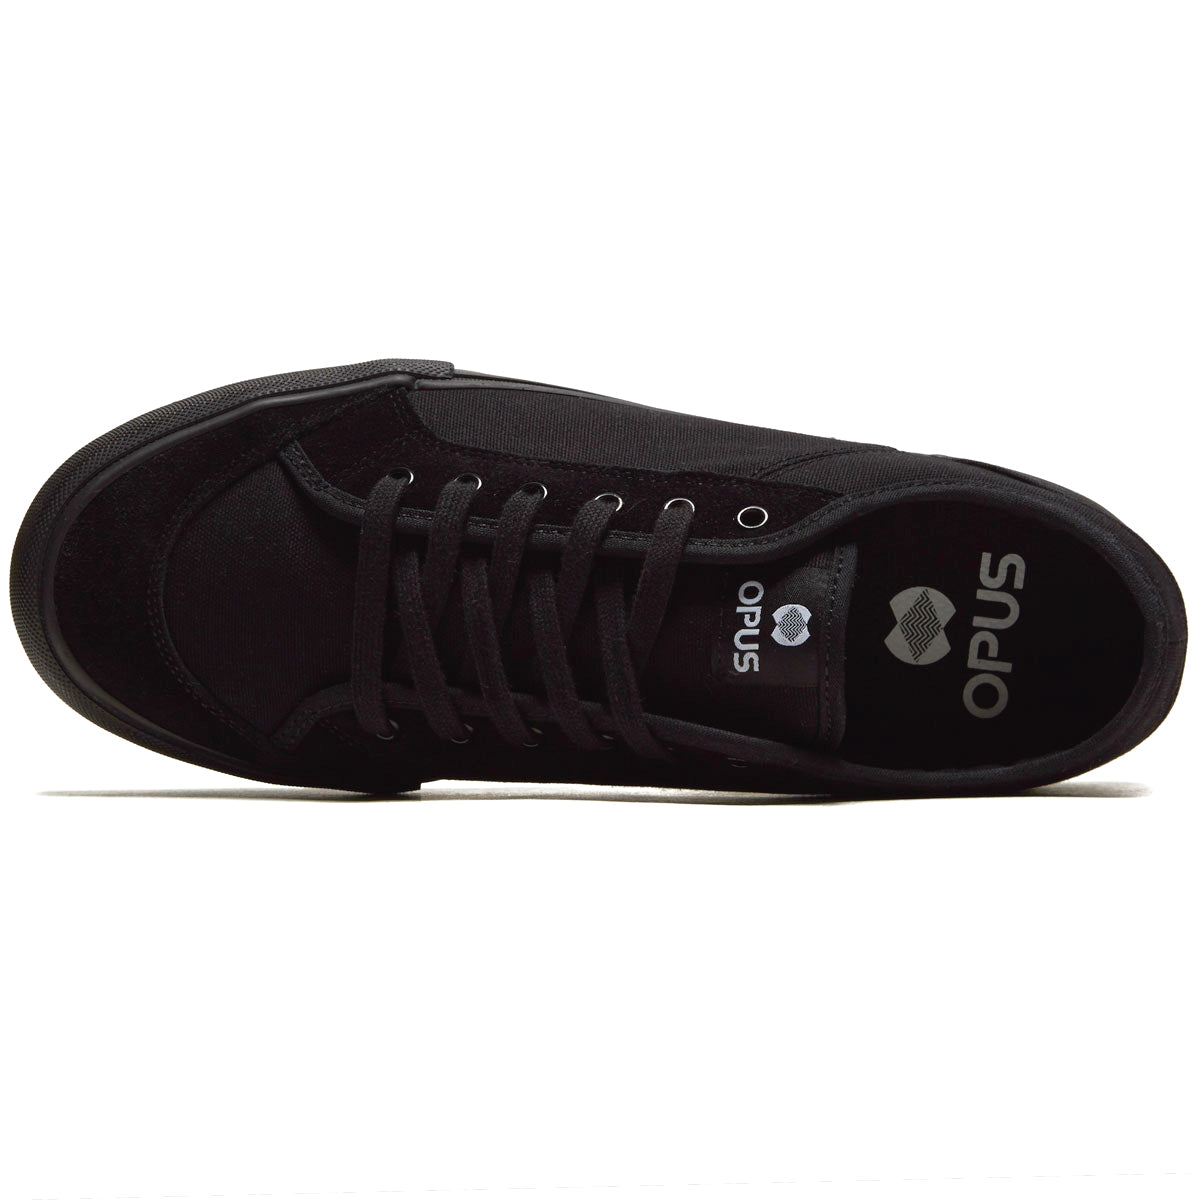 Opus Court Low Shoes - Black image 3